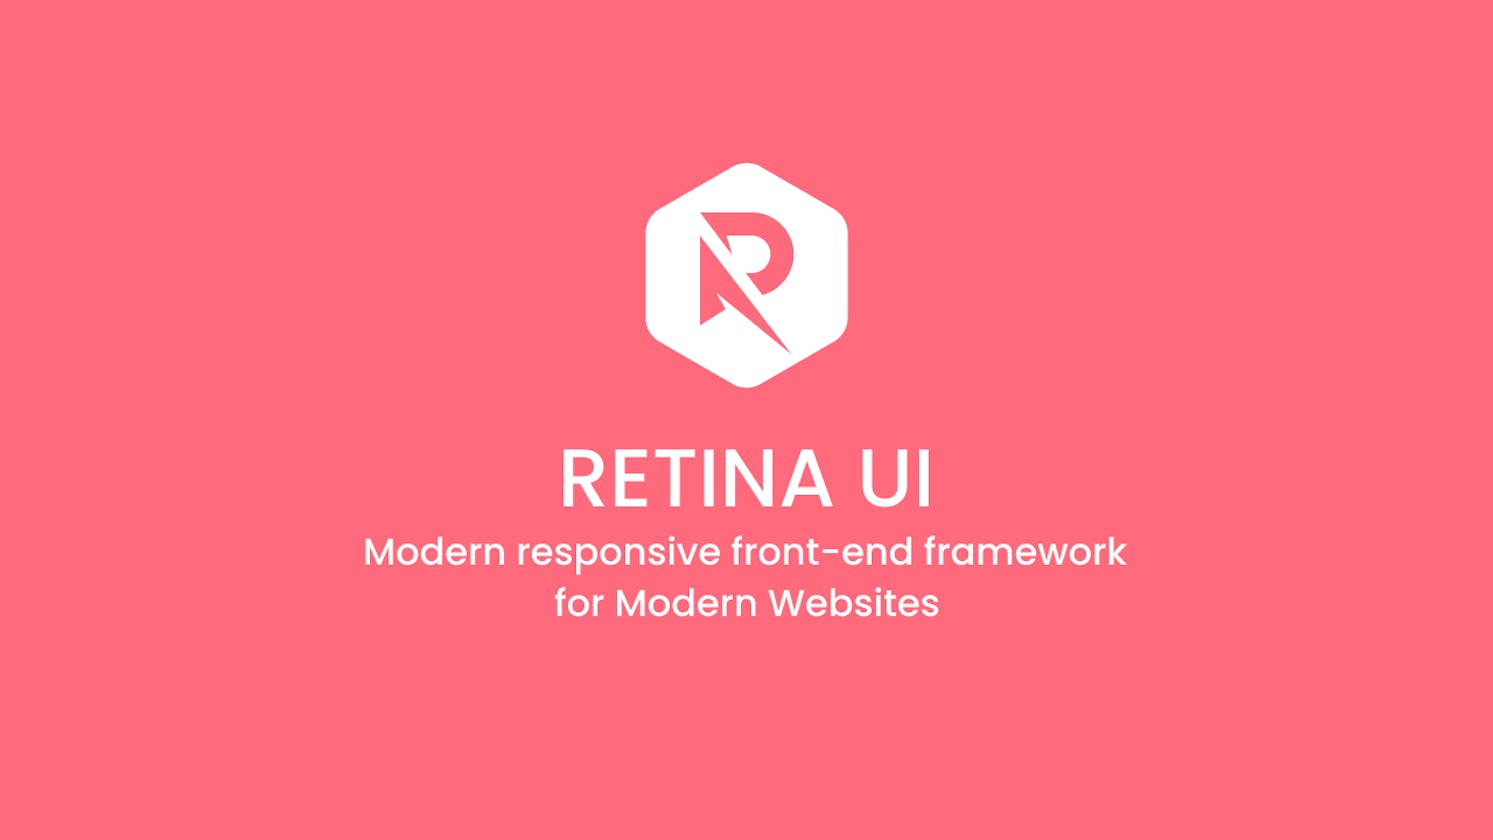 Introducing Retina UI - Modern responsive front-end framework for Modern Websites.